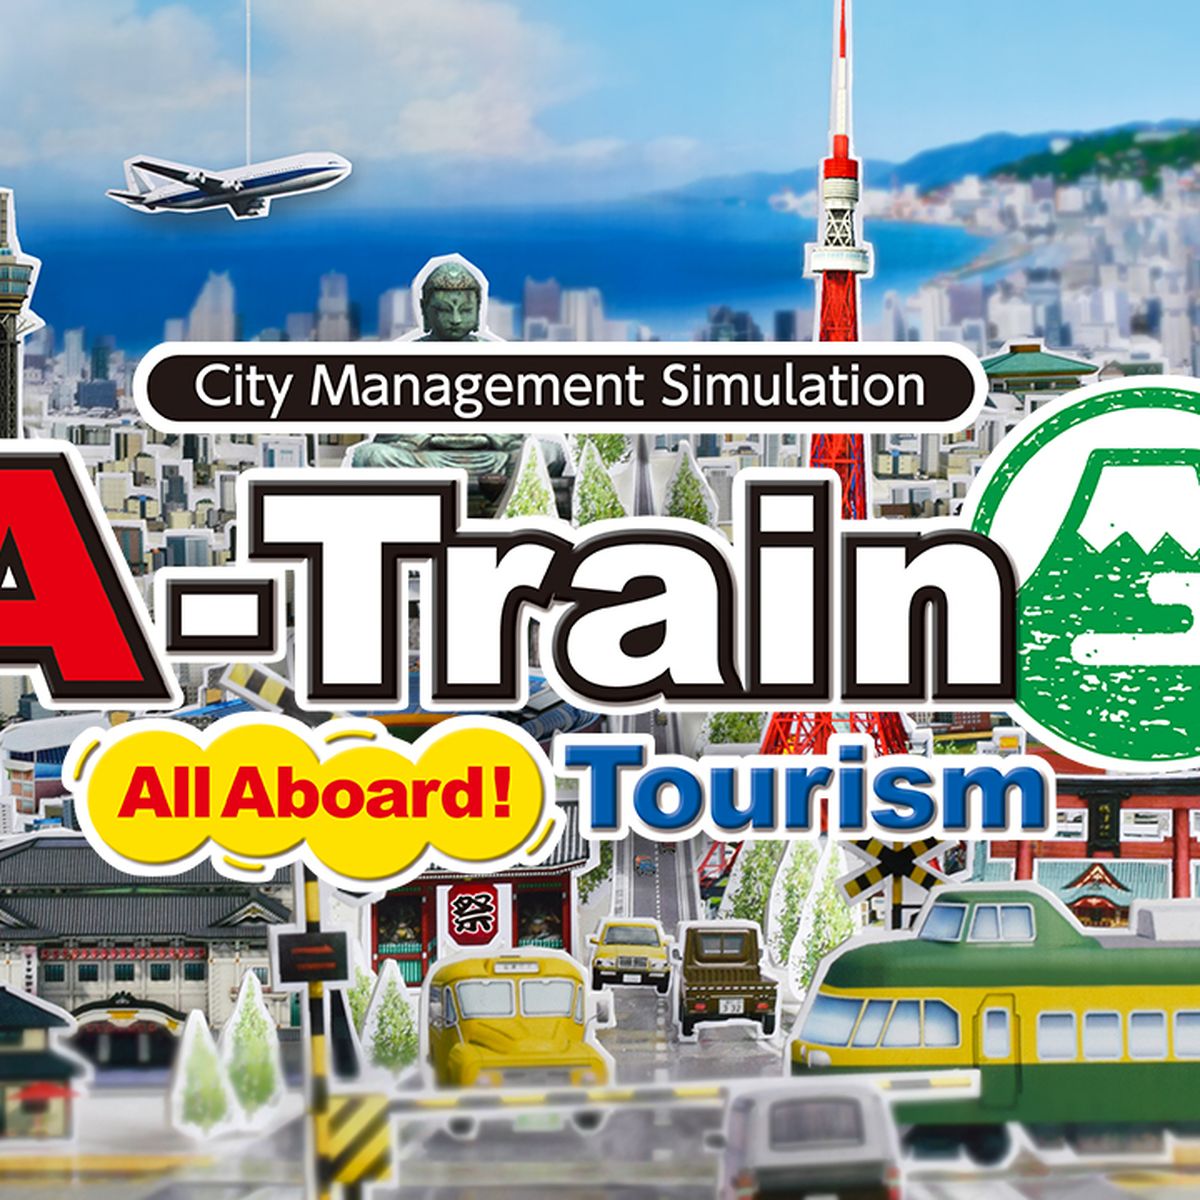 A-Train una Switch Consolas All recibe disponible | Aboard juego Hobby de ferroviaria, red de gestión demo Nintendo ya Tourism,